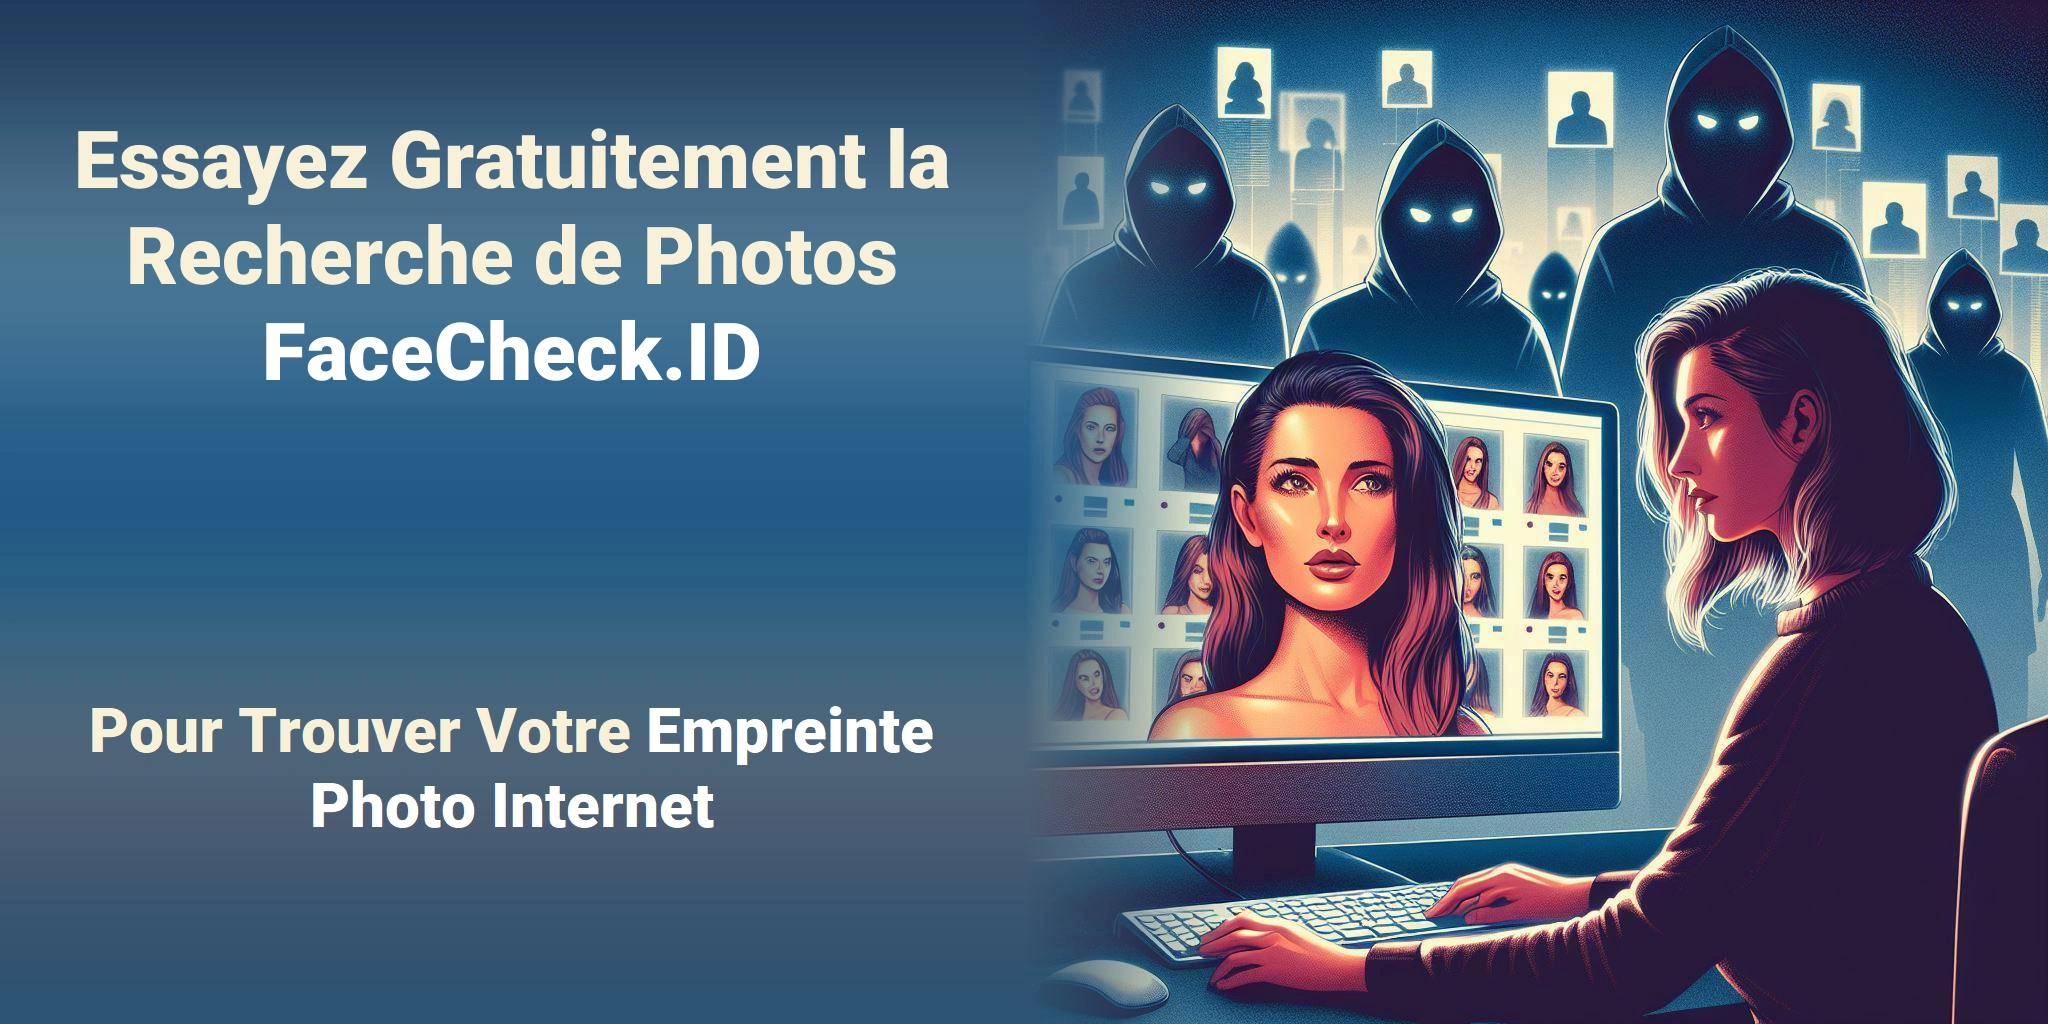 Essayez Gratuitement la Recherche de Photos FaceCheck.ID Pour Trouver Votre Empreinte Photo Internet